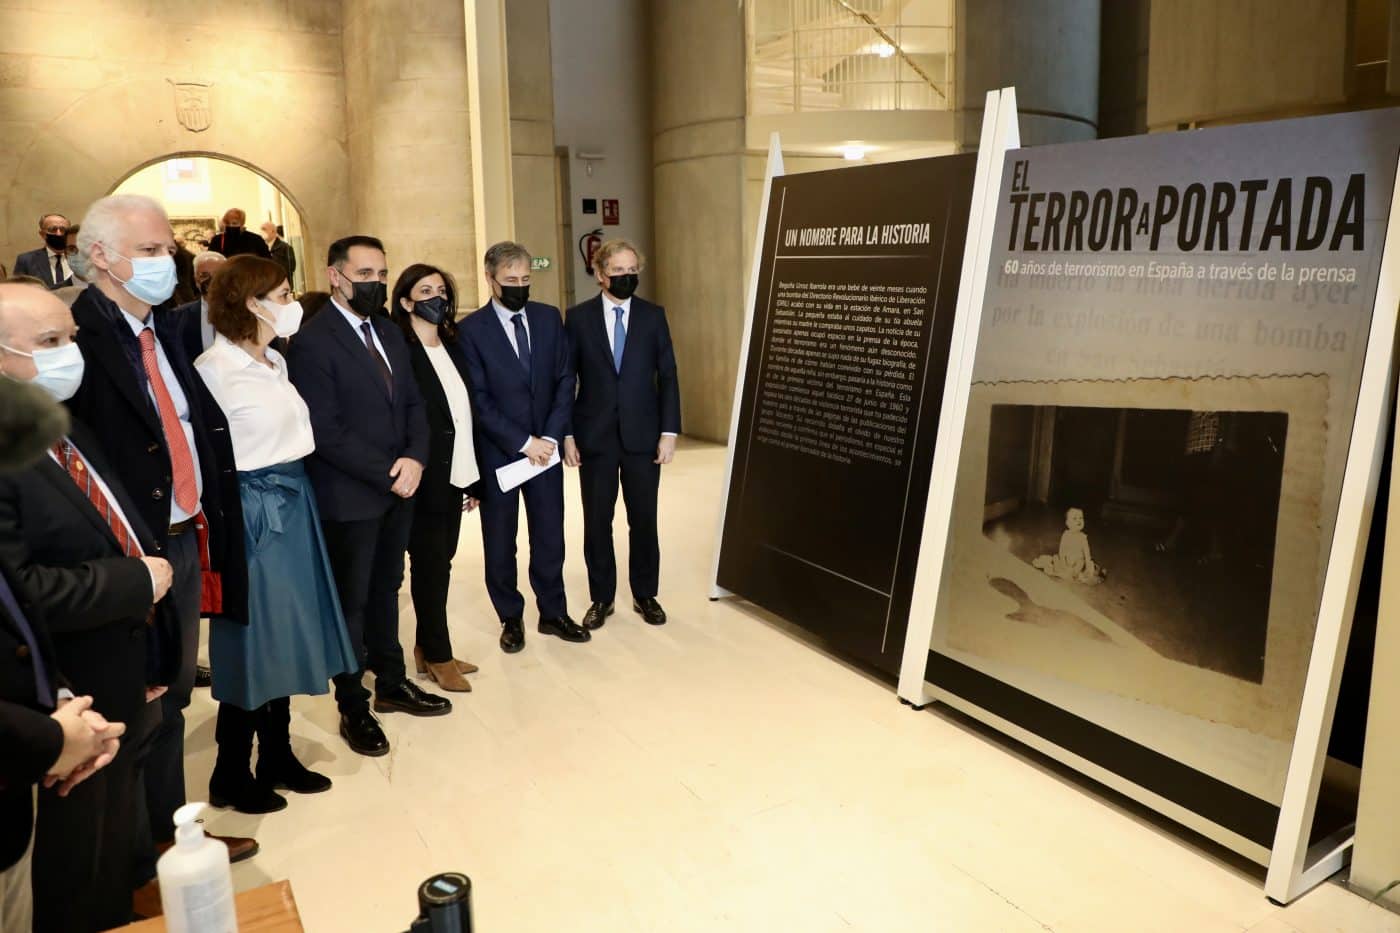 El Parlamento riojano acoge una exposición sobre los 60 años de terrorismo en España a través de la prensa 2